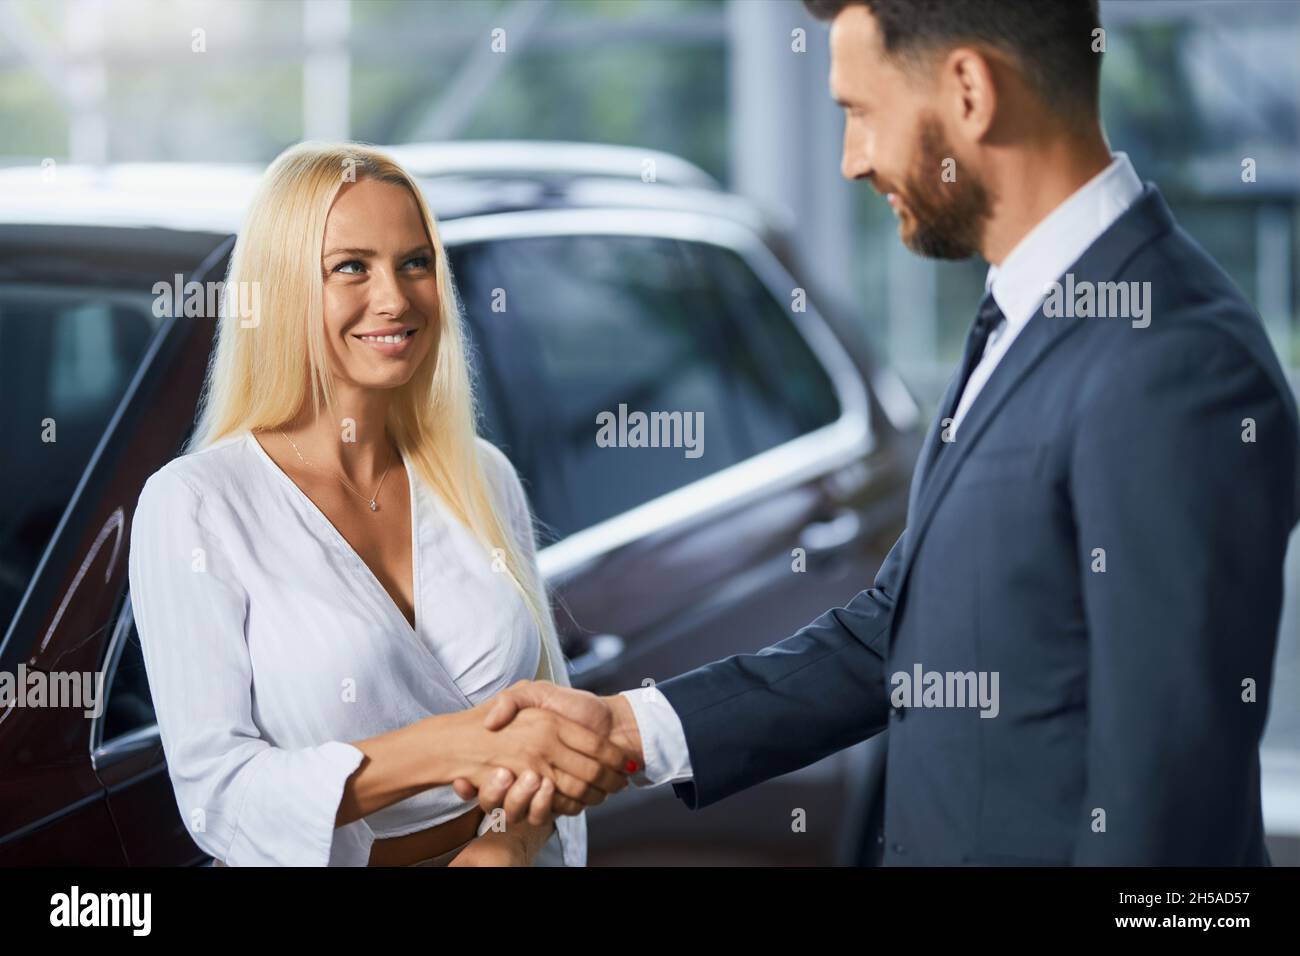 Kaukasischer Autohändler in stilvollem Anzug Hände schütteln mit charmanten Frau mit blonden Haaren nach erfolgreicher Vereinbarung des Kaufs Auto. Konzept von Menschen, Verkauf und Kauf. Stockfoto